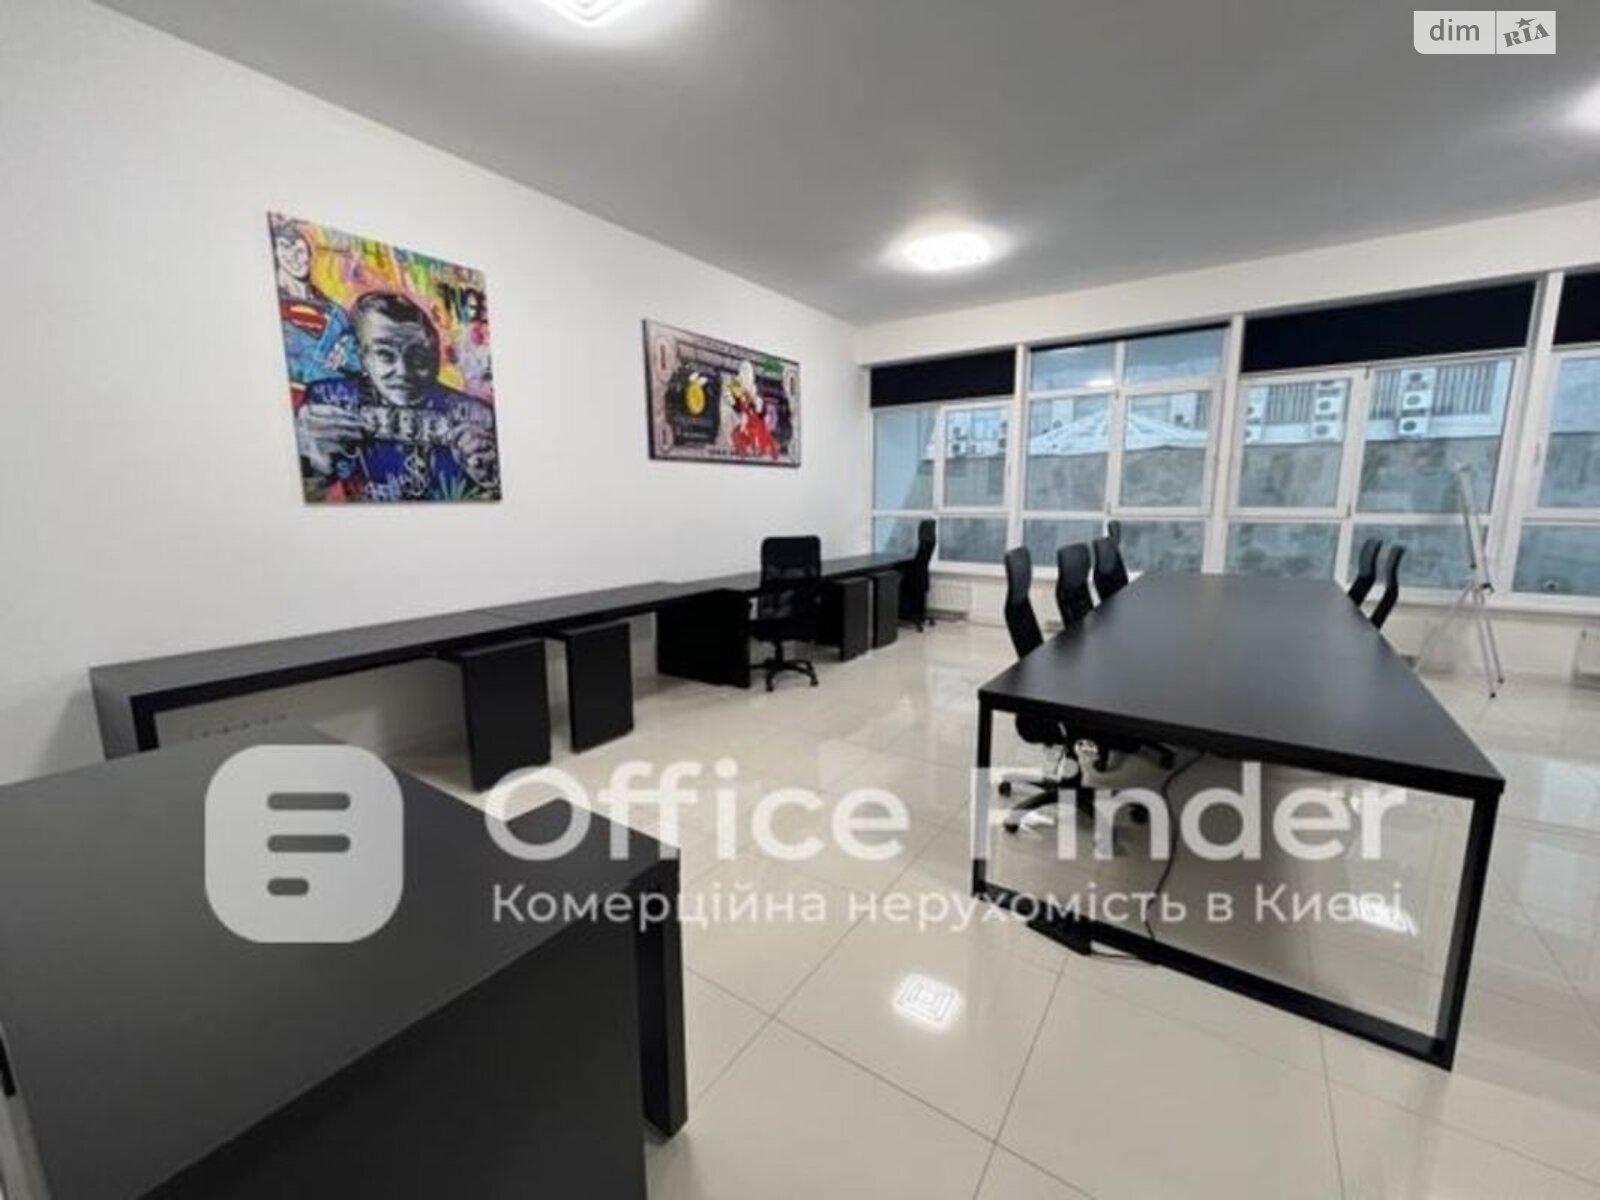 Аренда офисного помещения в Киеве, Кловский спуск 7, помещений - 2, этаж - 9 фото 1